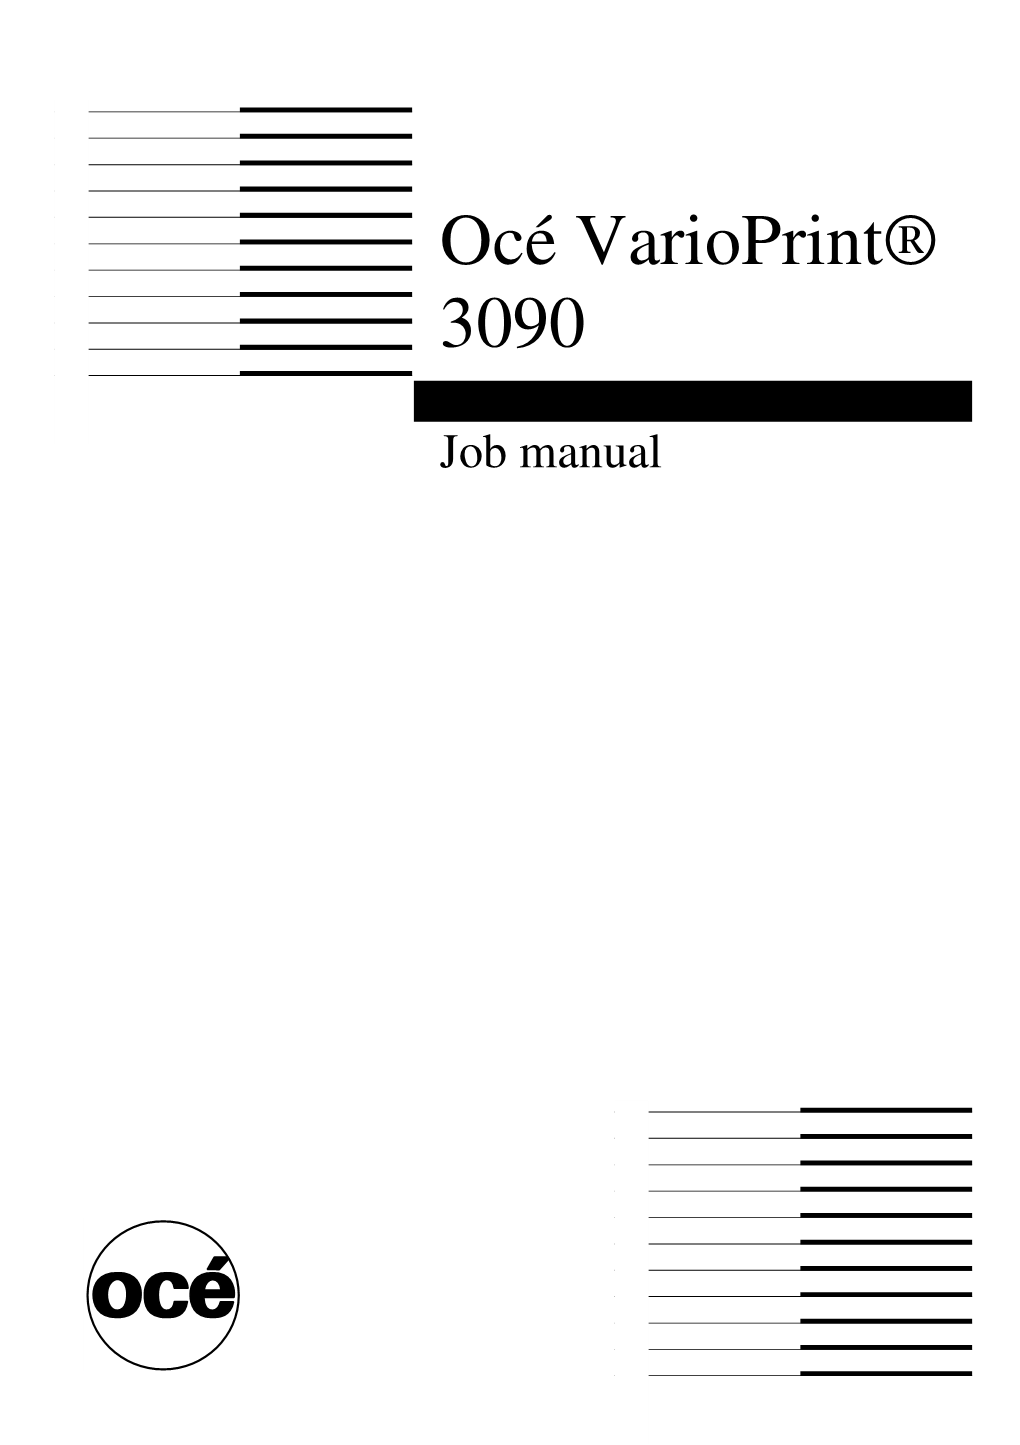 Océ Varioprint 3090 Job Manual Contents